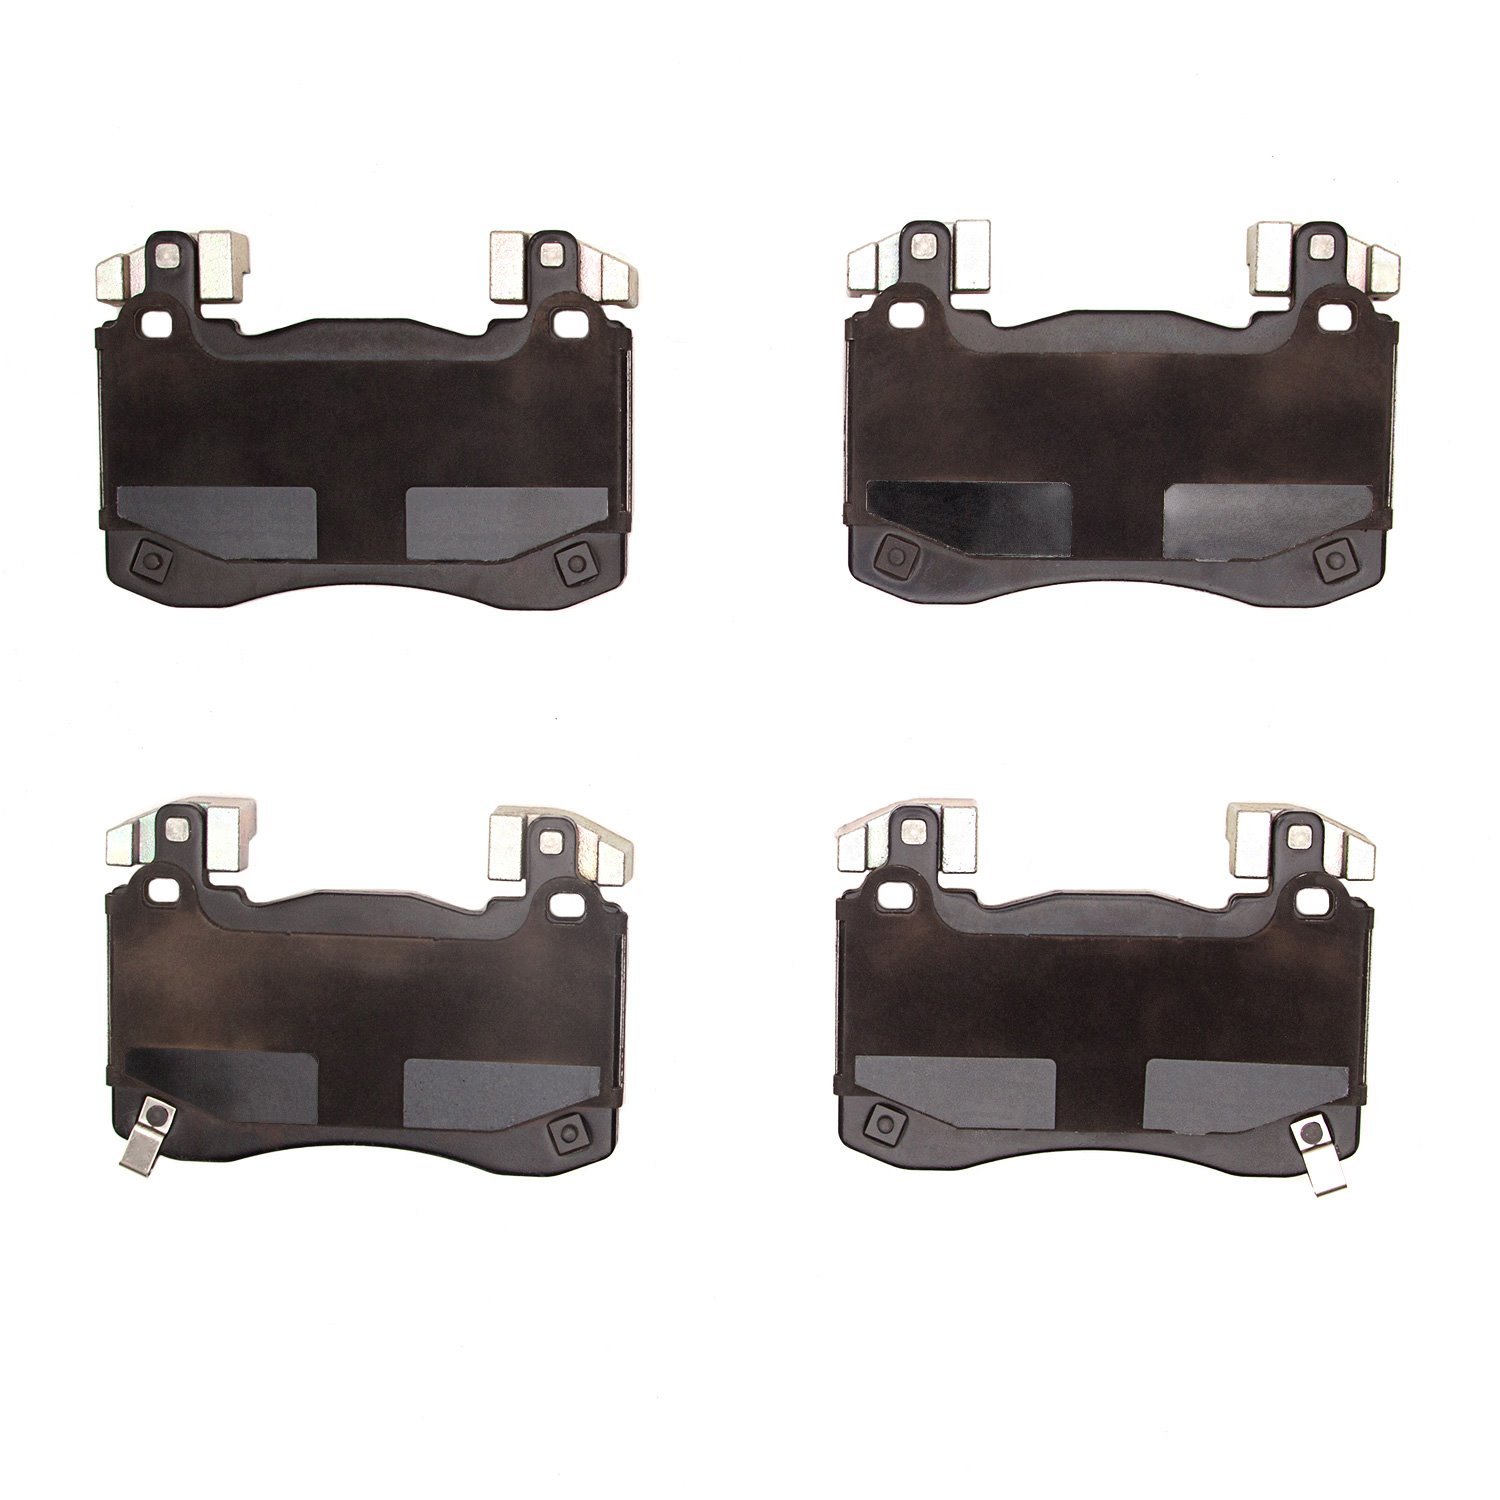 1310-2145-00 3000-Series Ceramic Brake Pads, Fits Select Kia/Hyundai/Genesis, Position: Front